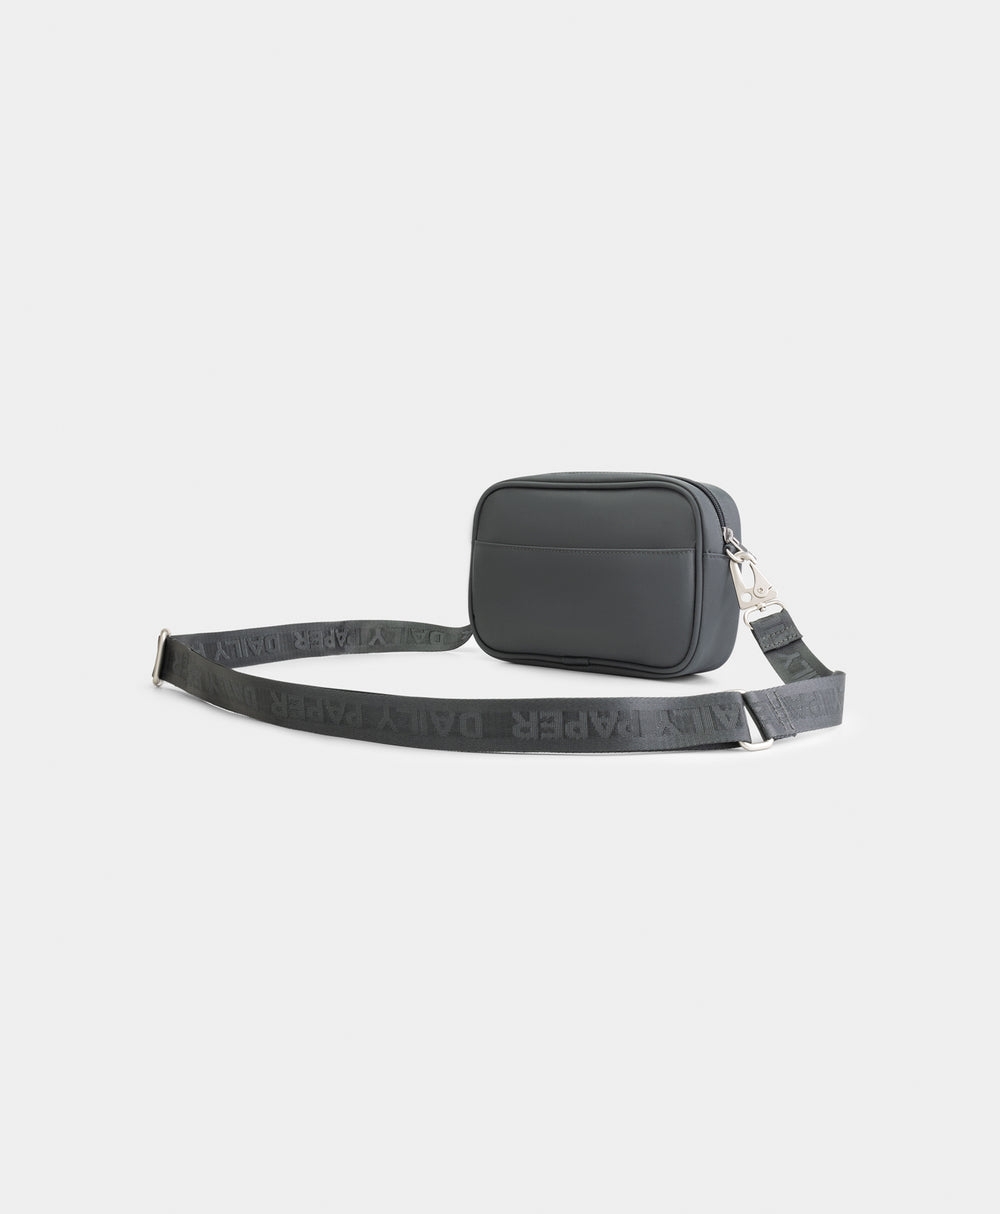 DP - Grey Pehamea Bag - Packshot - Rear